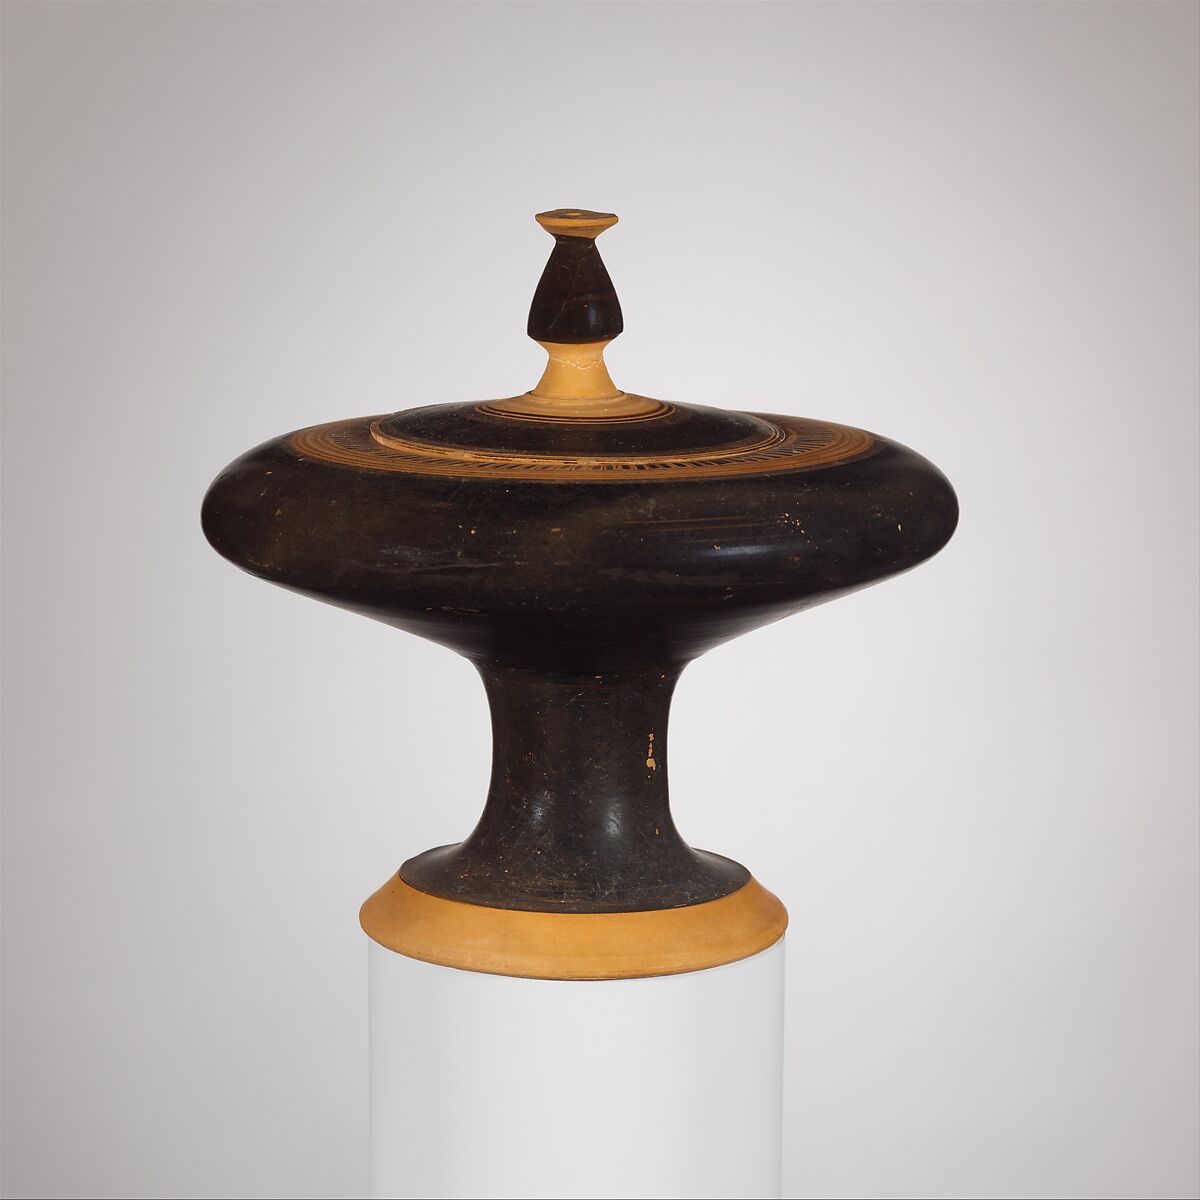 Terracotta plemochoe (vase for perfume), Assigned to Kothons Type B, Terracotta, Greek, Attic 